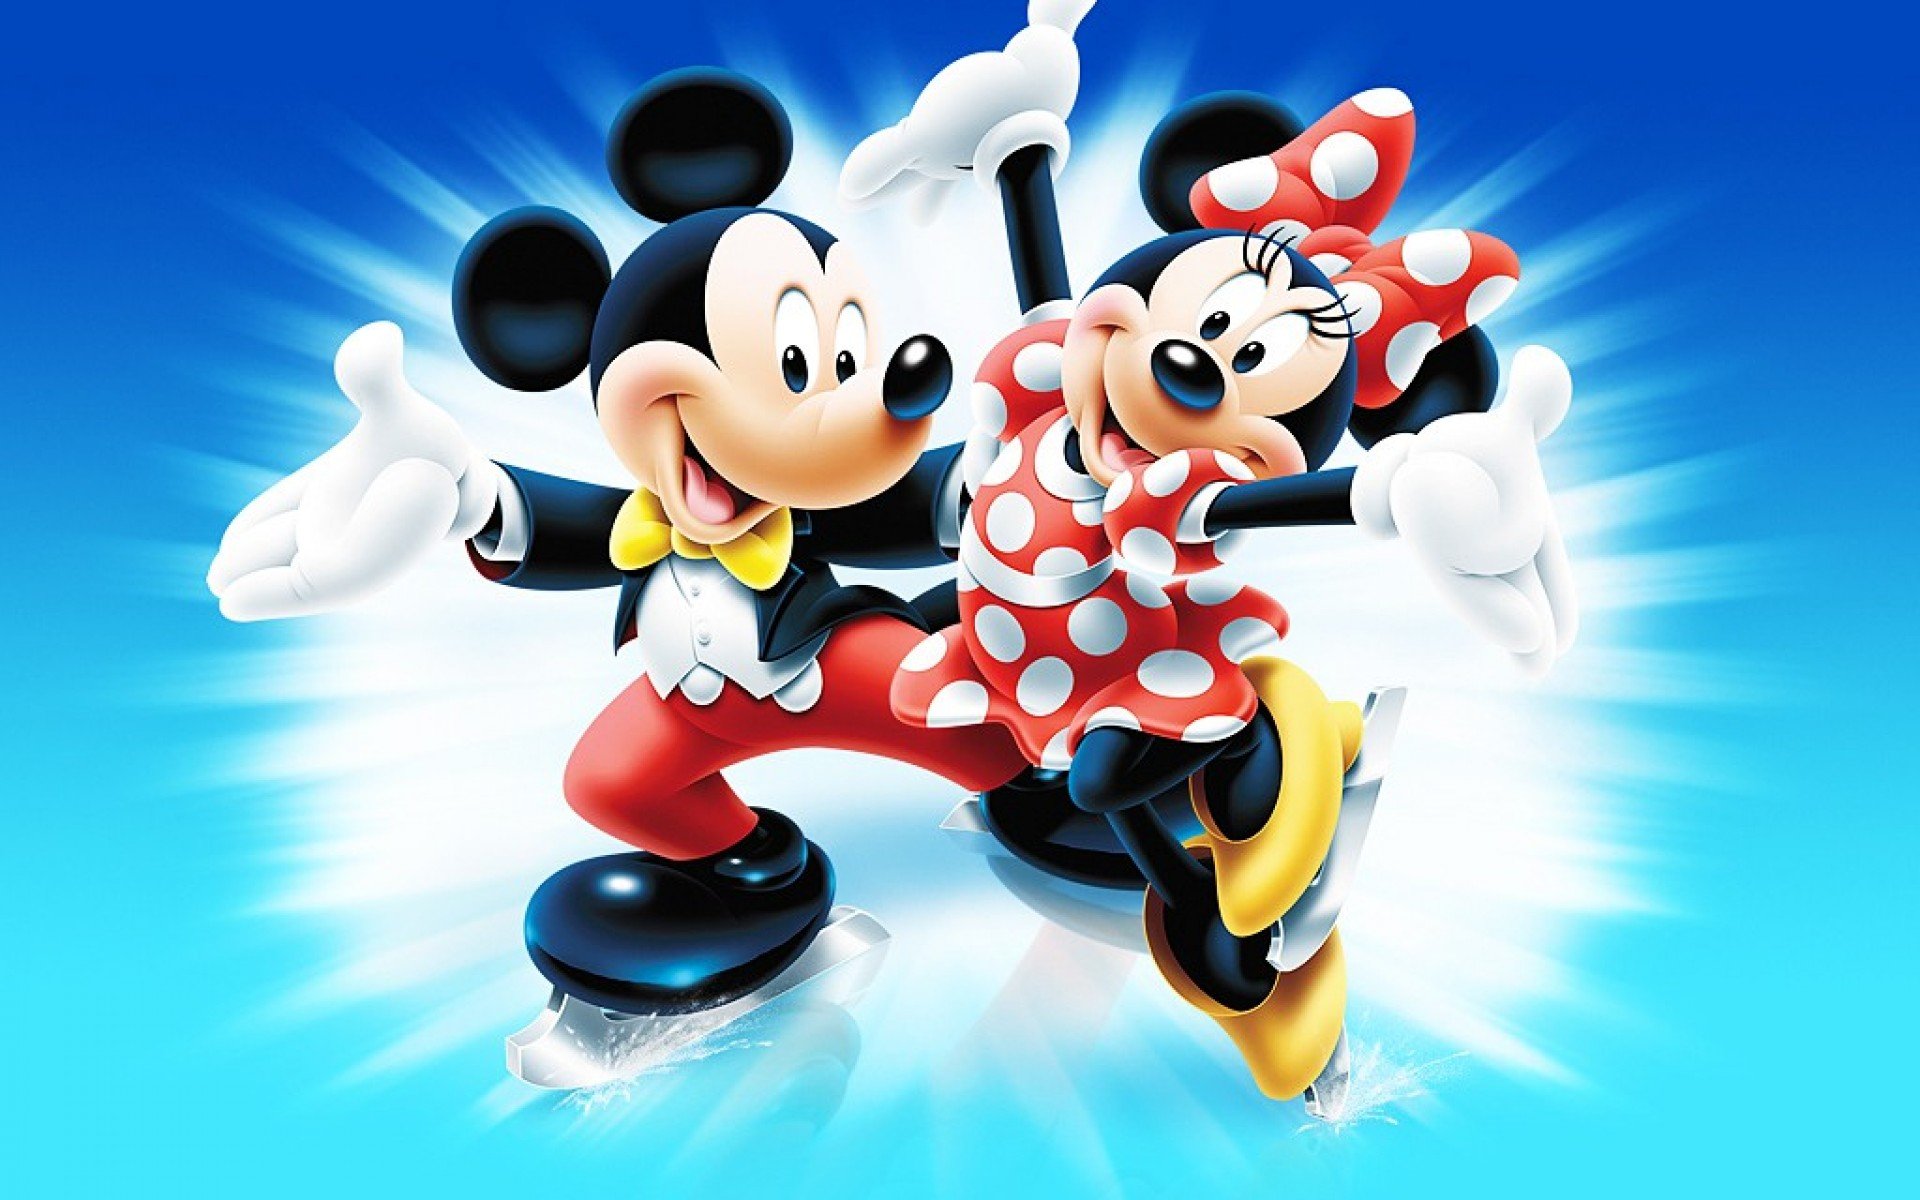 Met Mickey en Minnie de wereld rond